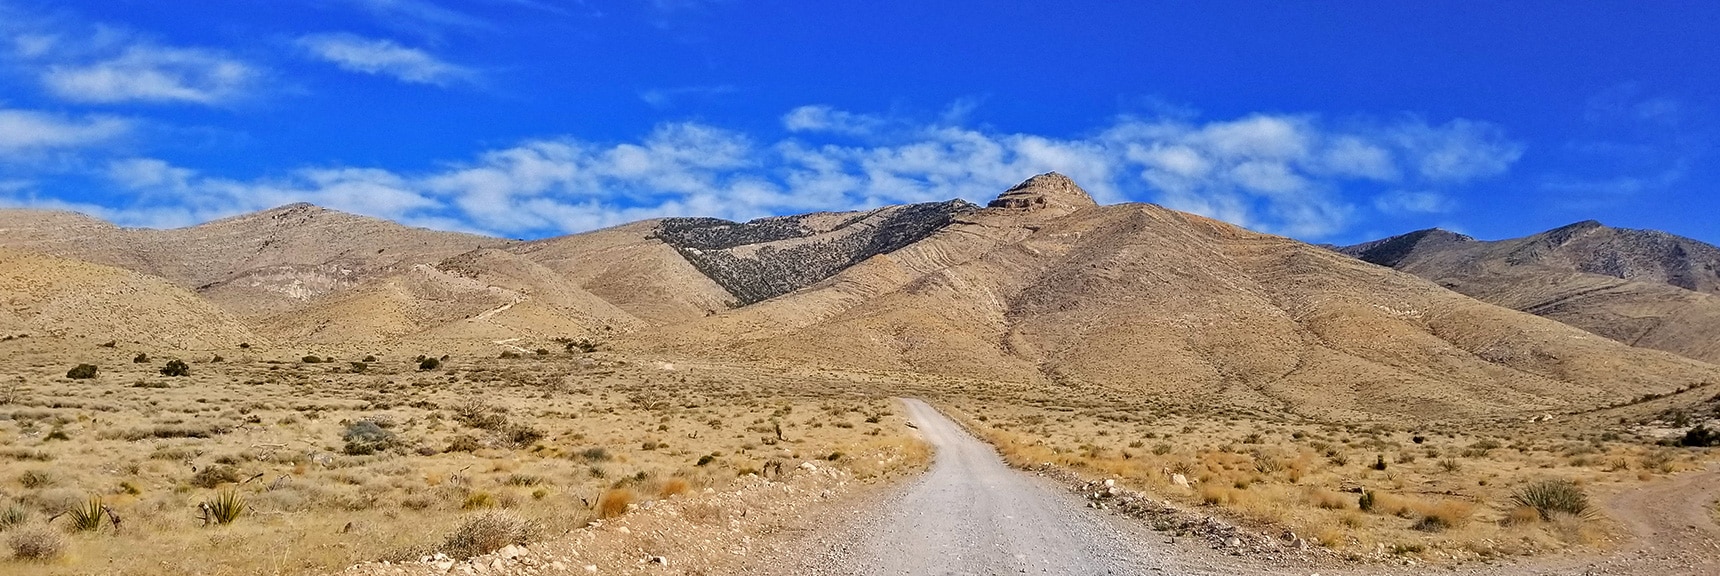 Heading Up Potosi Mountain Road | Potosi Mountain Spring Mountains Nevada